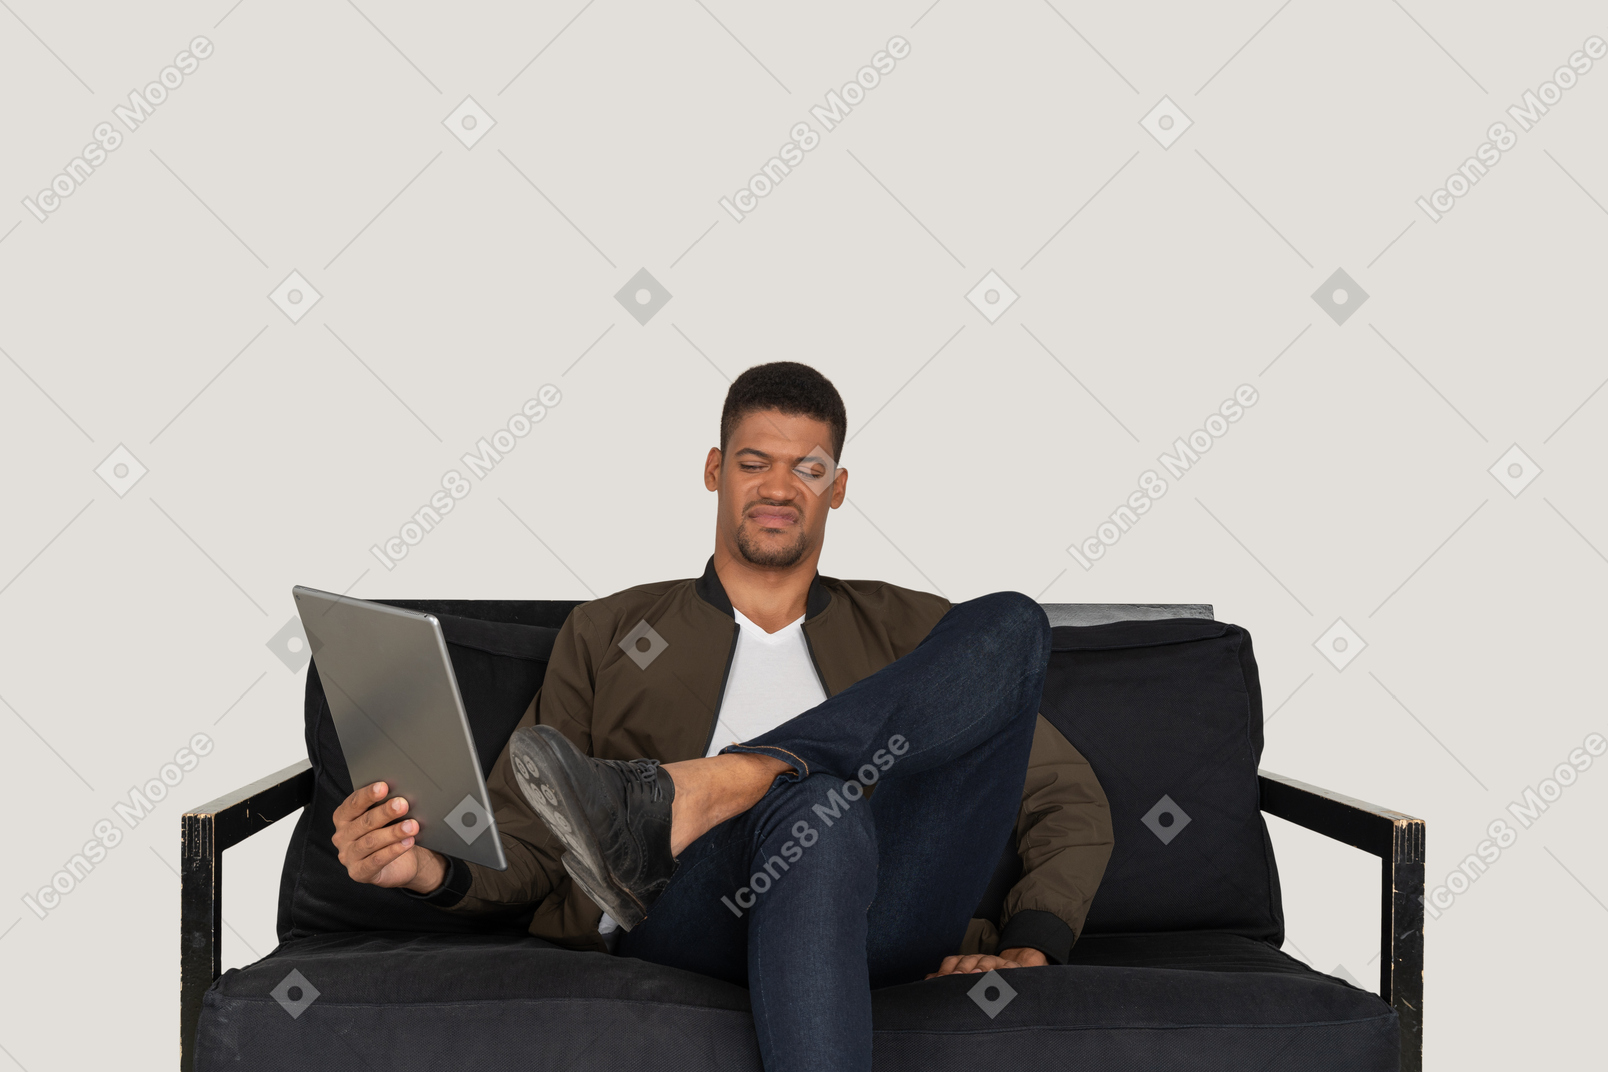 Vista frontal de un joven haciendo muecas sentado en un sofá